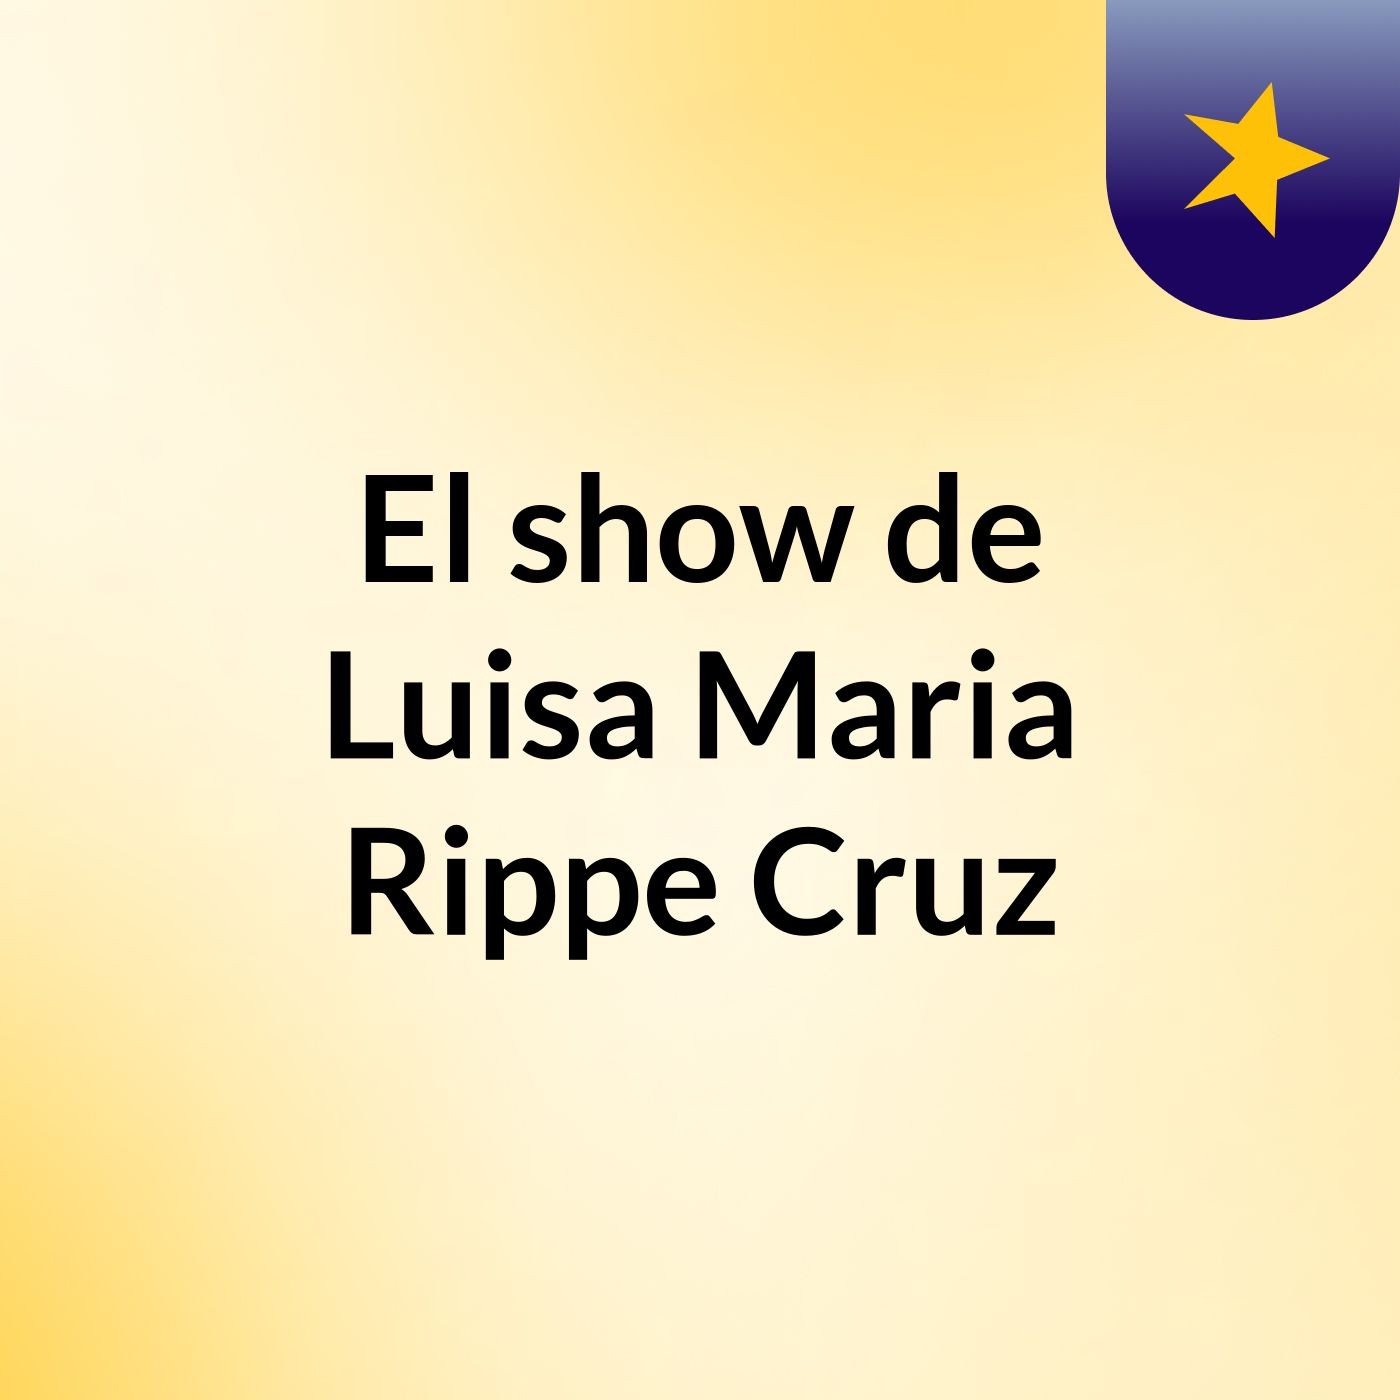 El show de Luisa Maria Rippe Cruz